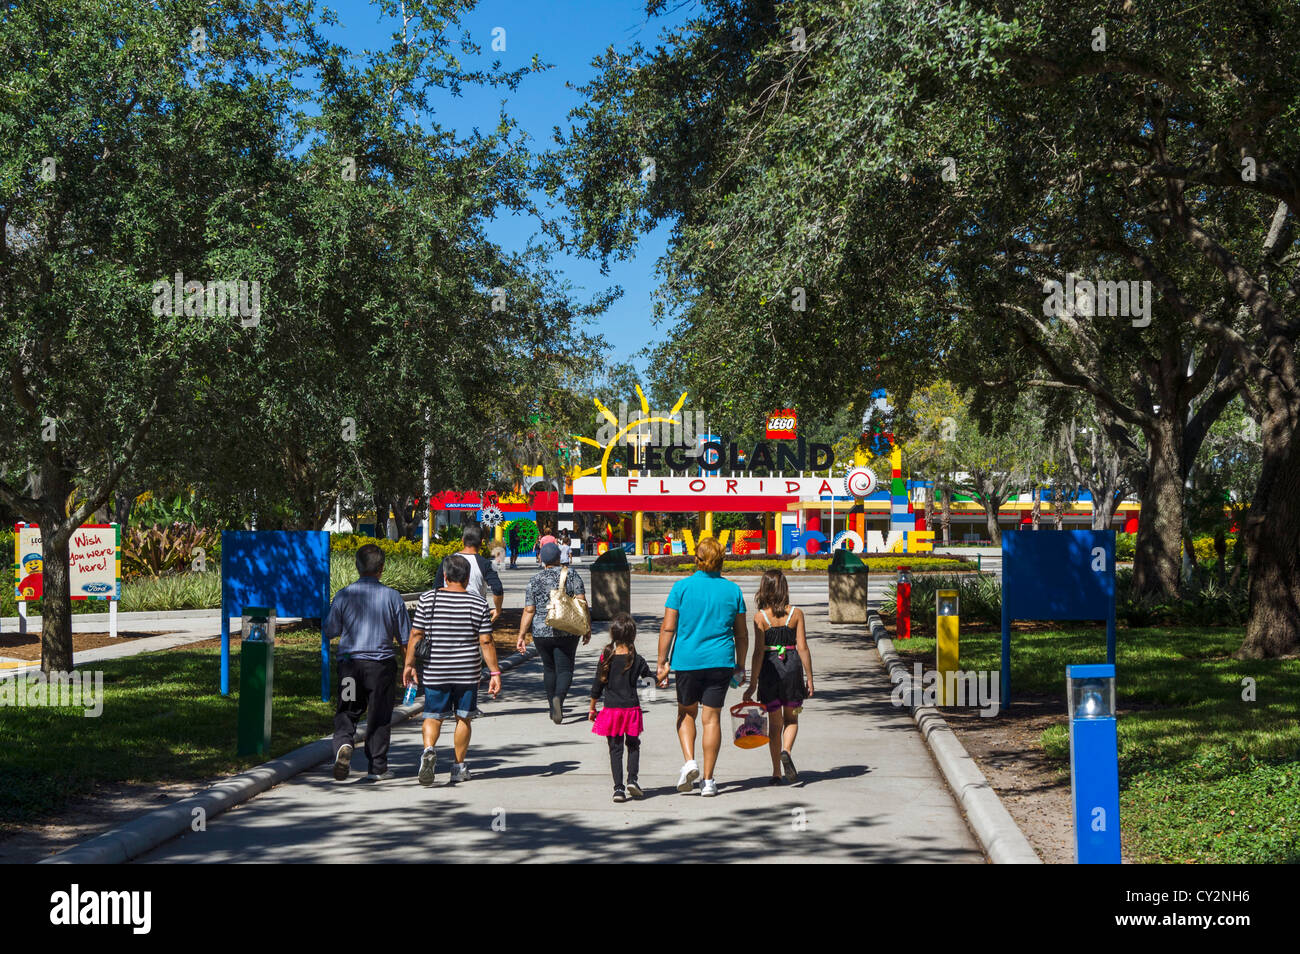 Entrada al parque temático Legoland Florida, Winter Haven, Florida, EE.UU. Foto de stock